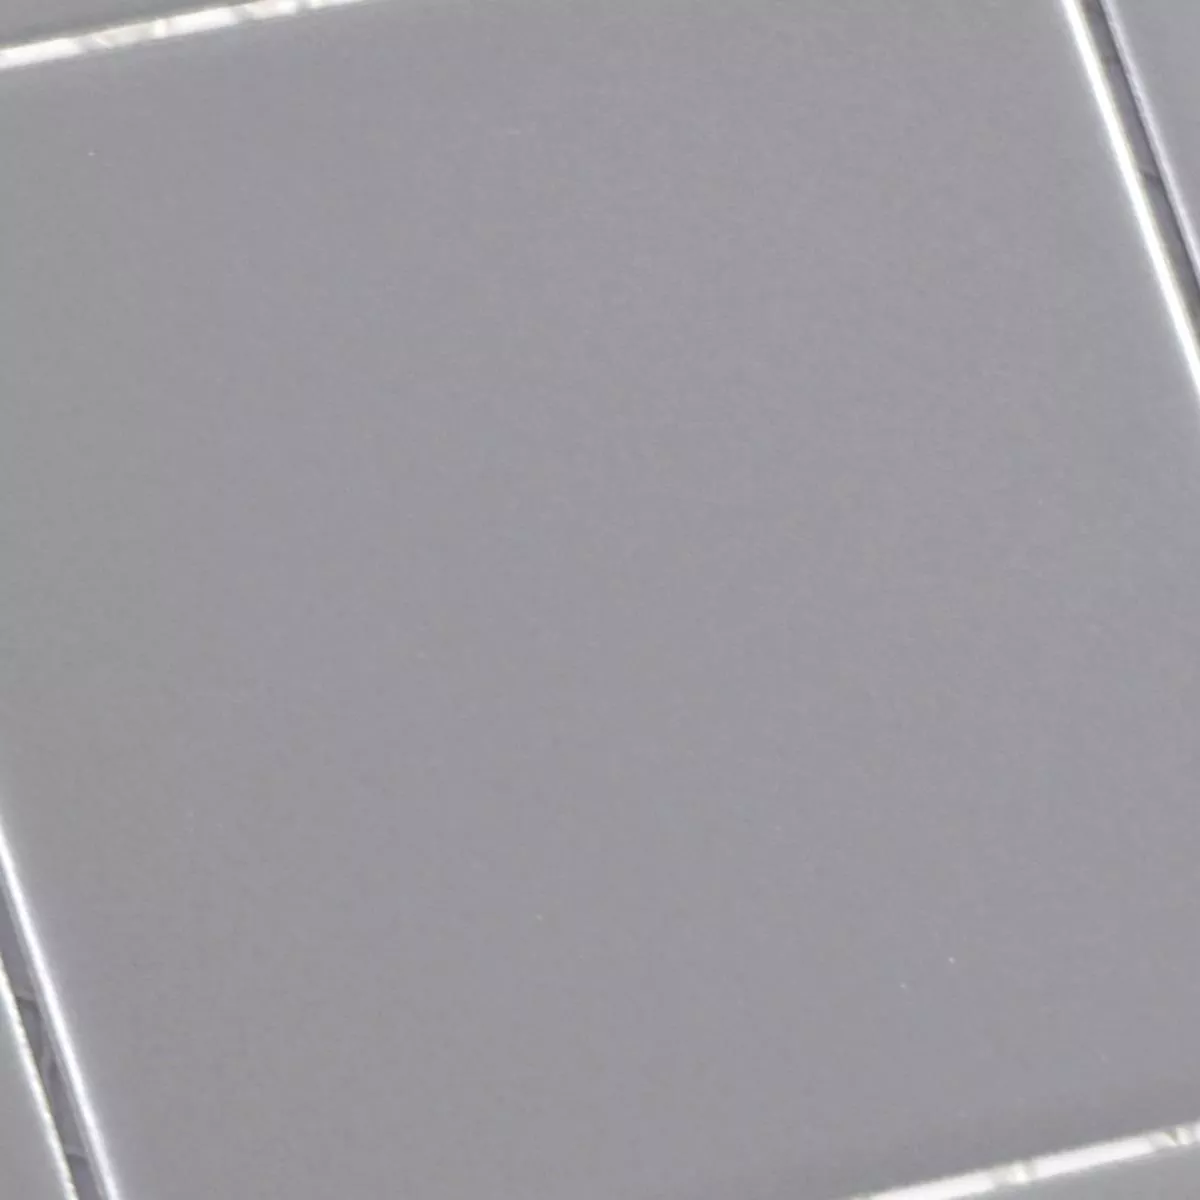 Sample Ceramic Mosaic Tiles Adrian Grey Mat Square 98